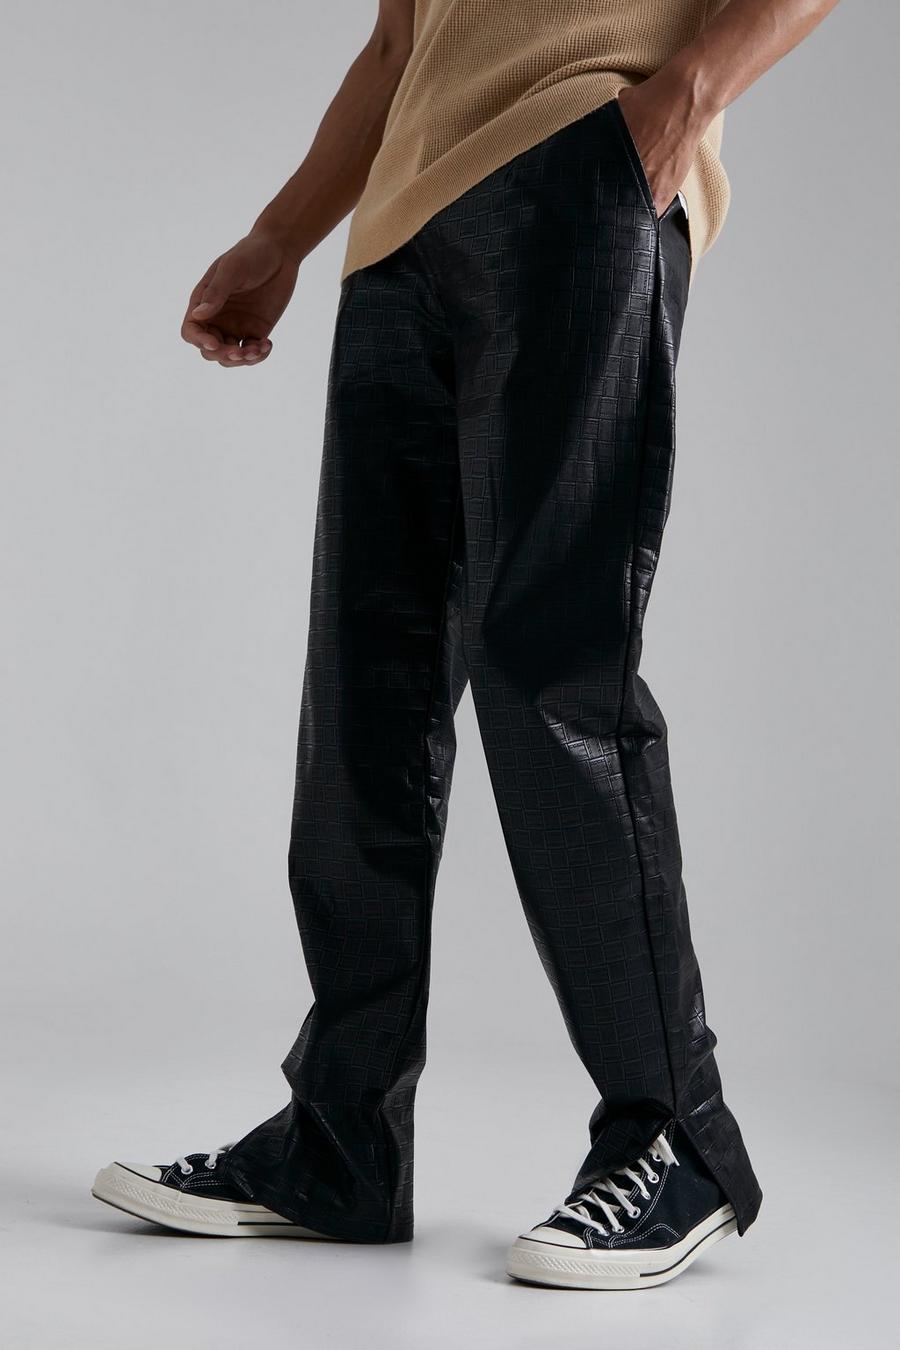 Pantalón Tall de cuero sintético con estampado de cuadros y abertura en el bajo, Black negro